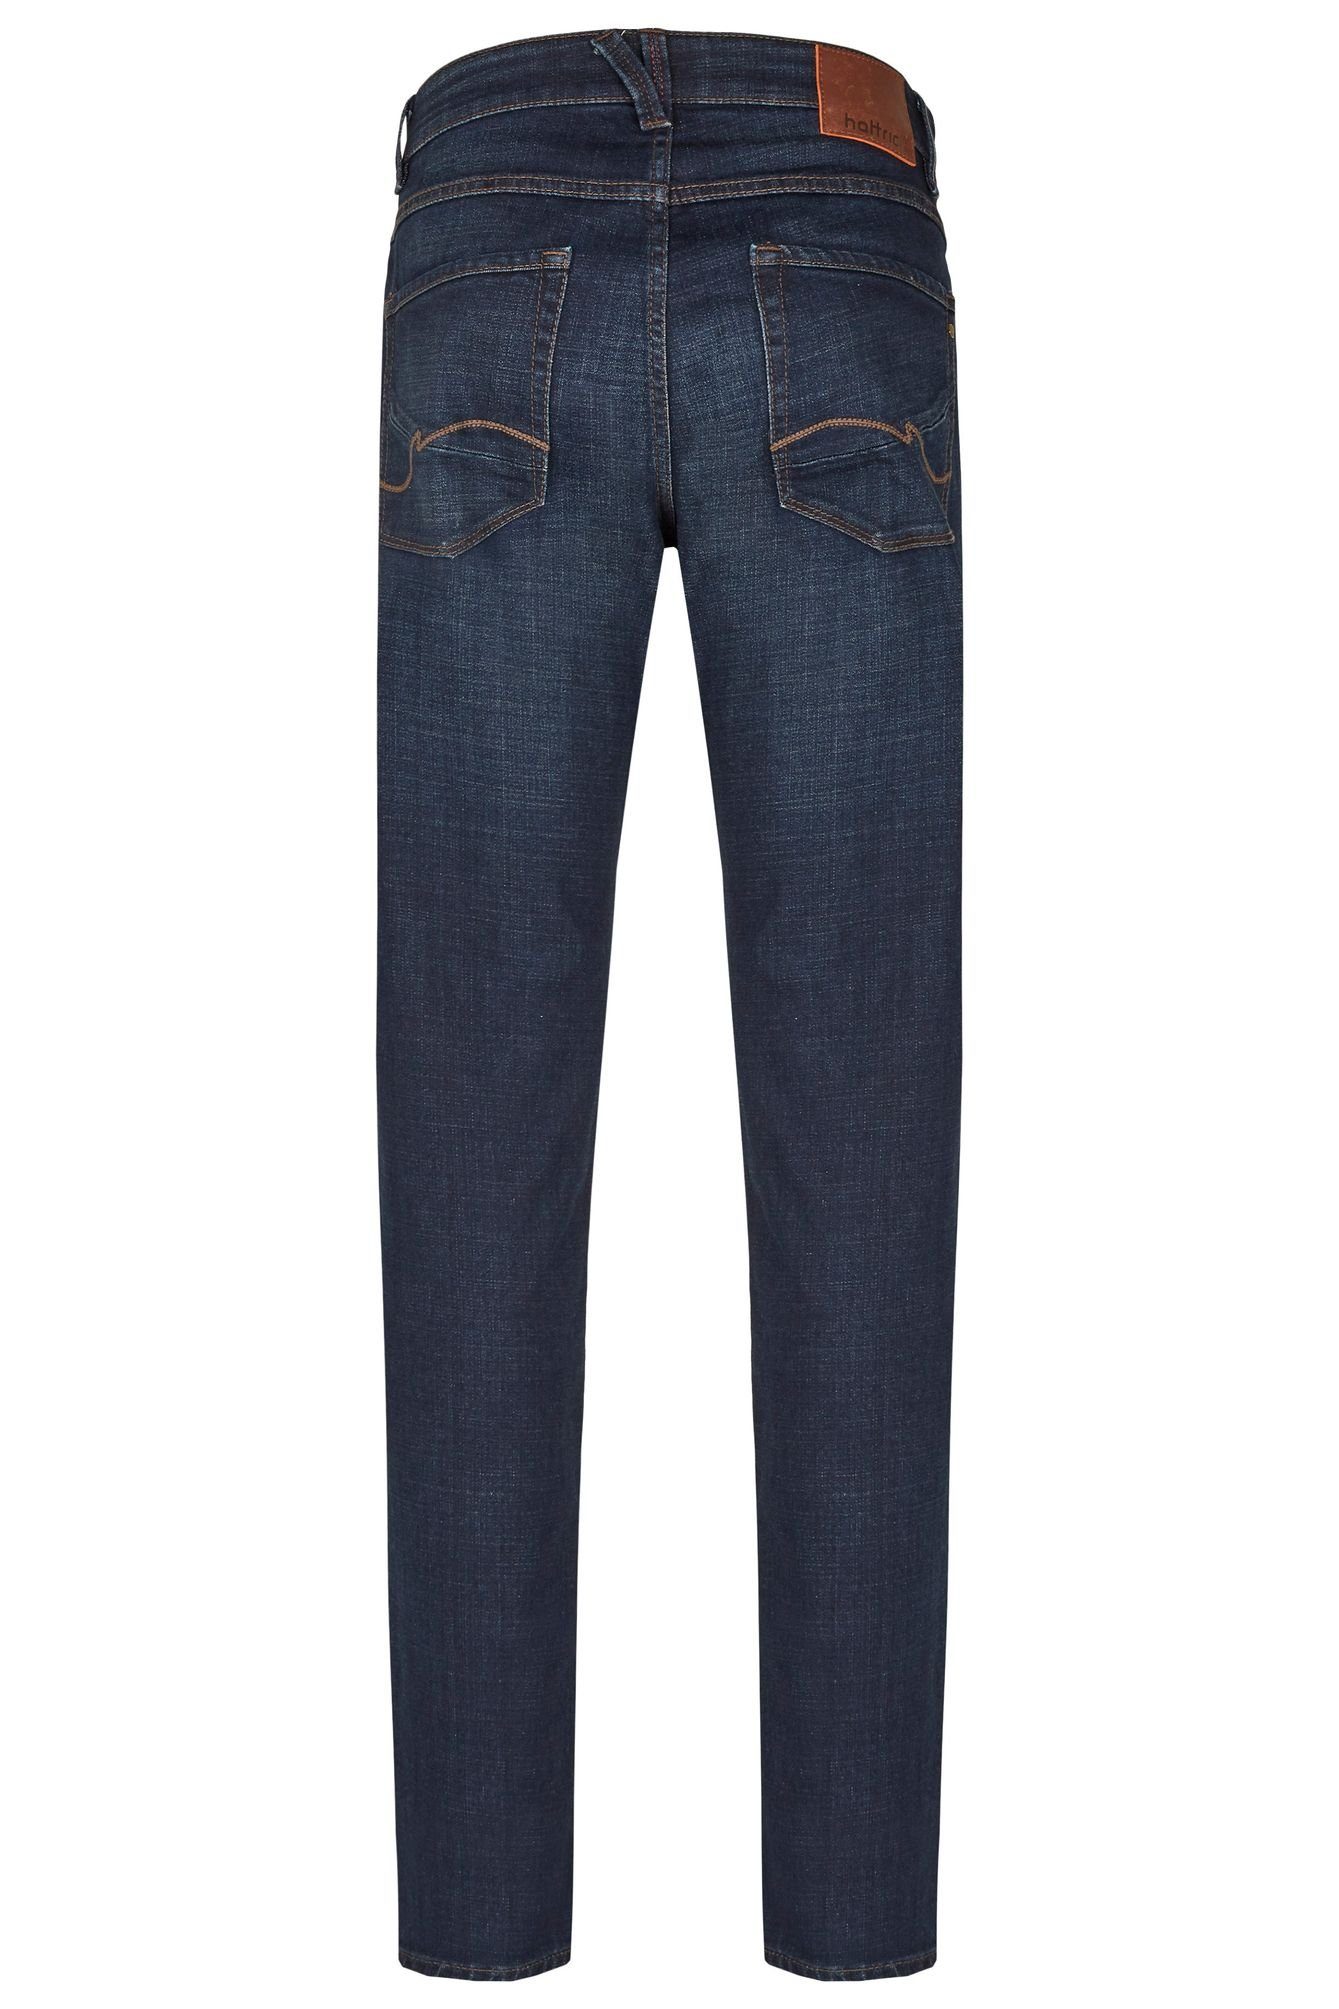 Hattric 5-Pocket-Jeans 688495-9690 dark blue (48)